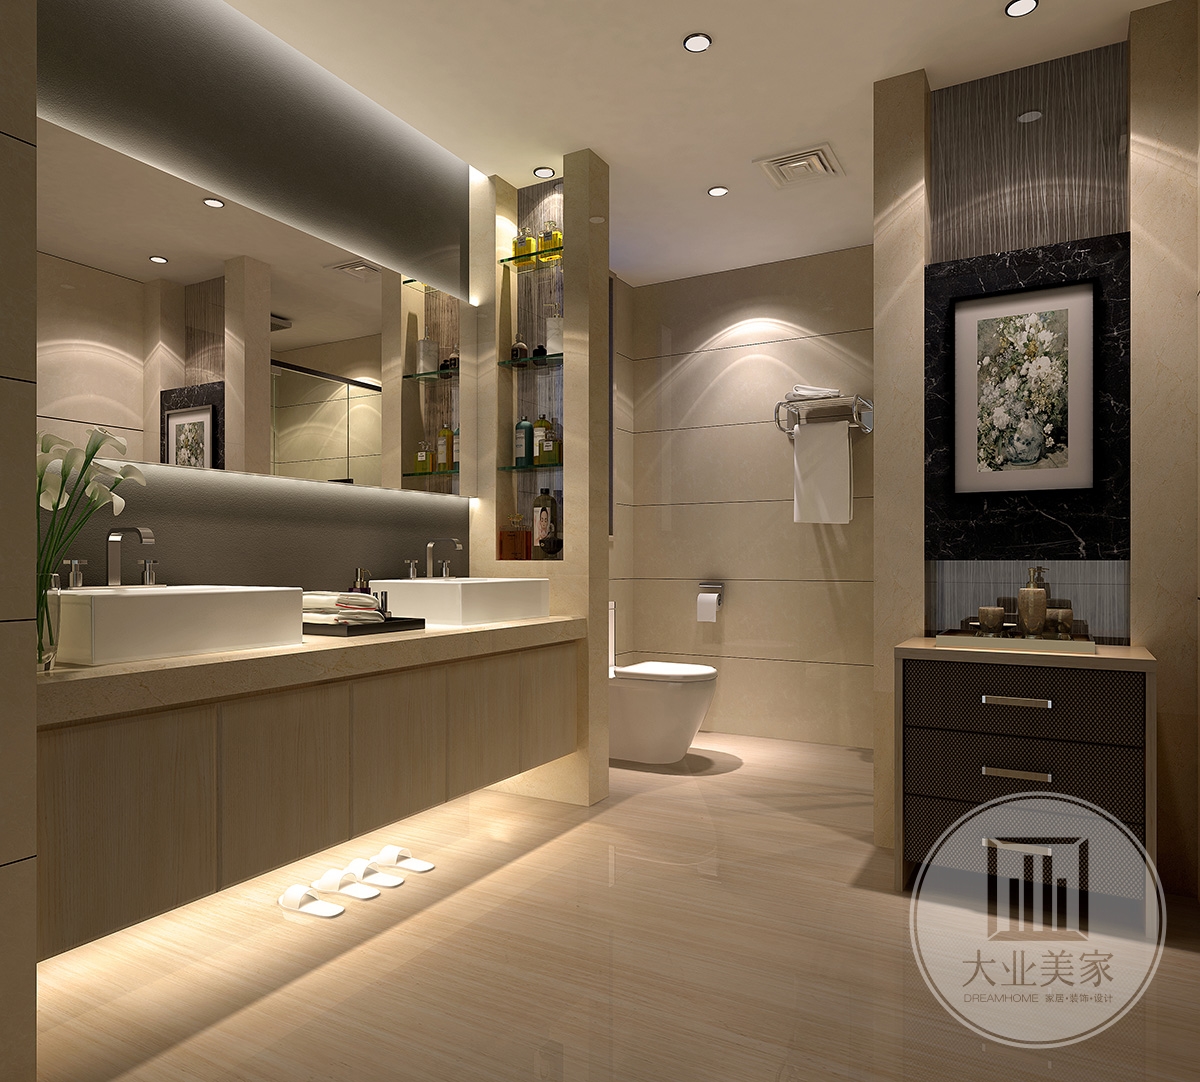 主卫效果图：主卫简洁清爽的卫浴间装修，黄色的墙面瓷砖、地面瓷砖，白色的卫浴洁具，整体格外的舒适。